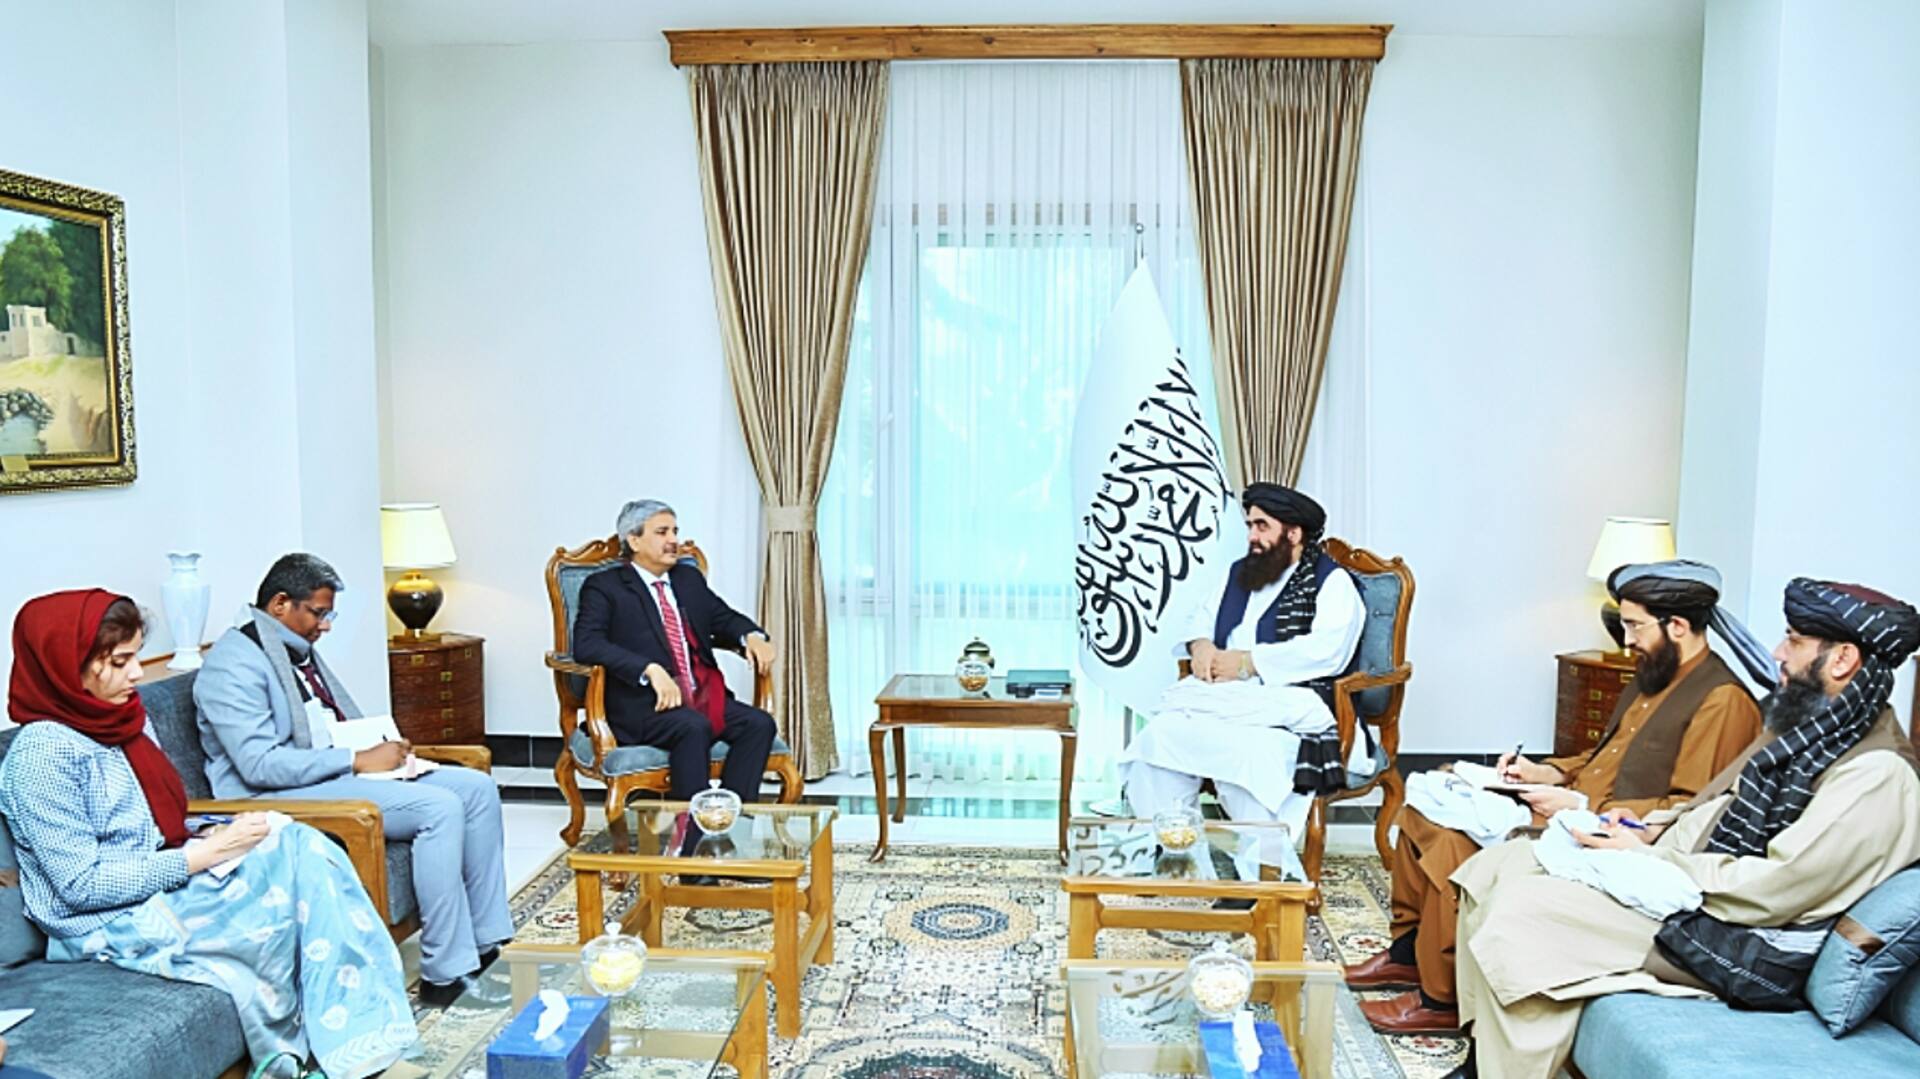 काबुल: भारतीय राजनयिक ने तालिबान के विदेश मंत्री से मुलाकात की, किन मुद्दों पर हुई बात?